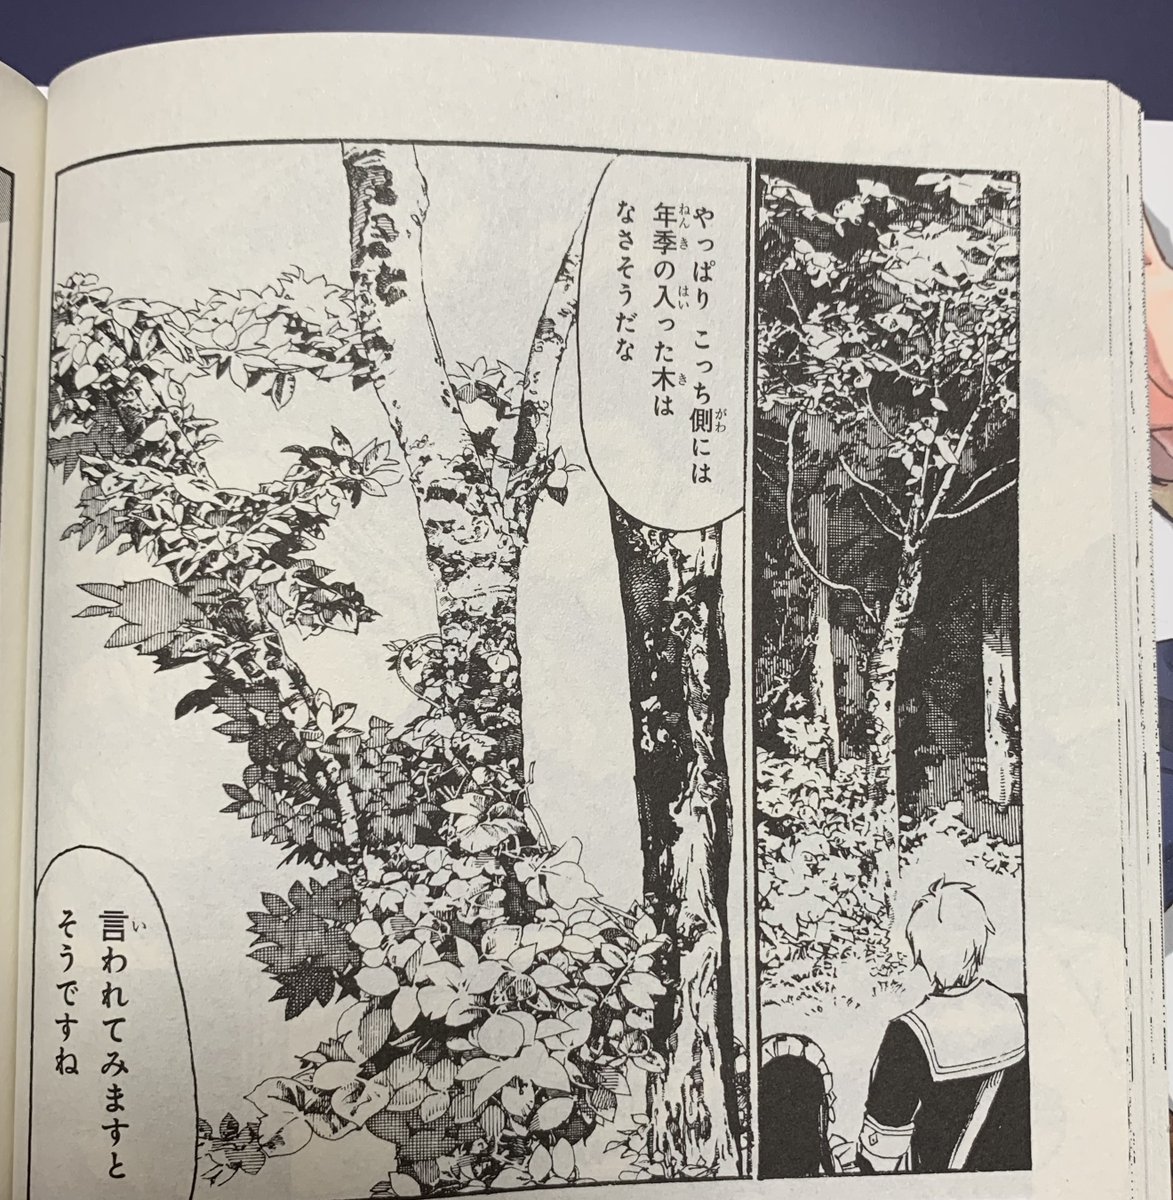 コミック版「追放された転生公爵は、辺境でのんびりと畑を耕したかった」発売中です。
作画の佐藤夕子先生は背景画の技術書を出されていることもあり、自然豊かな風景等の背景描写が特に魅力的です。是非に!
https://t.co/KS9npCKclp 